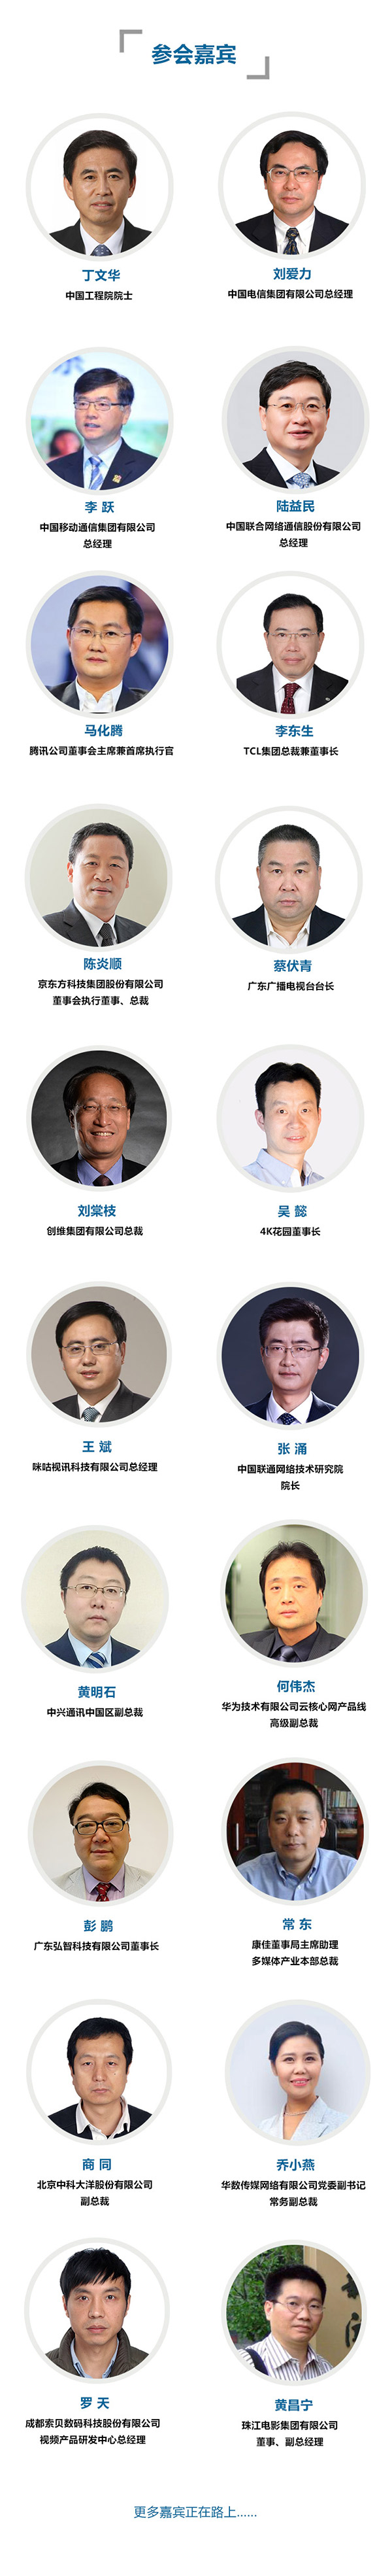 2018中国超高清视频（4K）产业发展大会